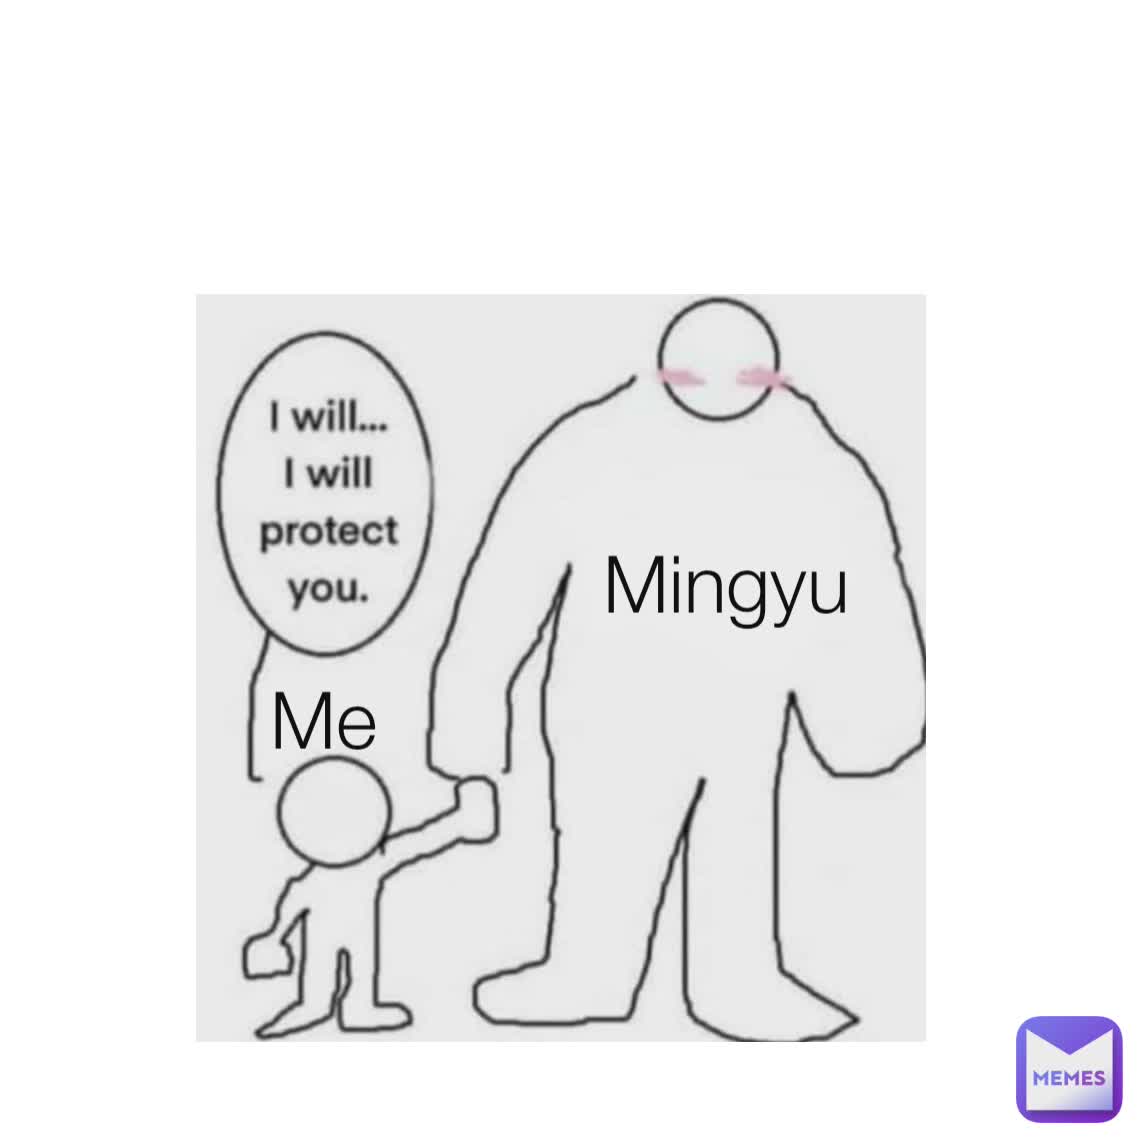 Me Mingyu